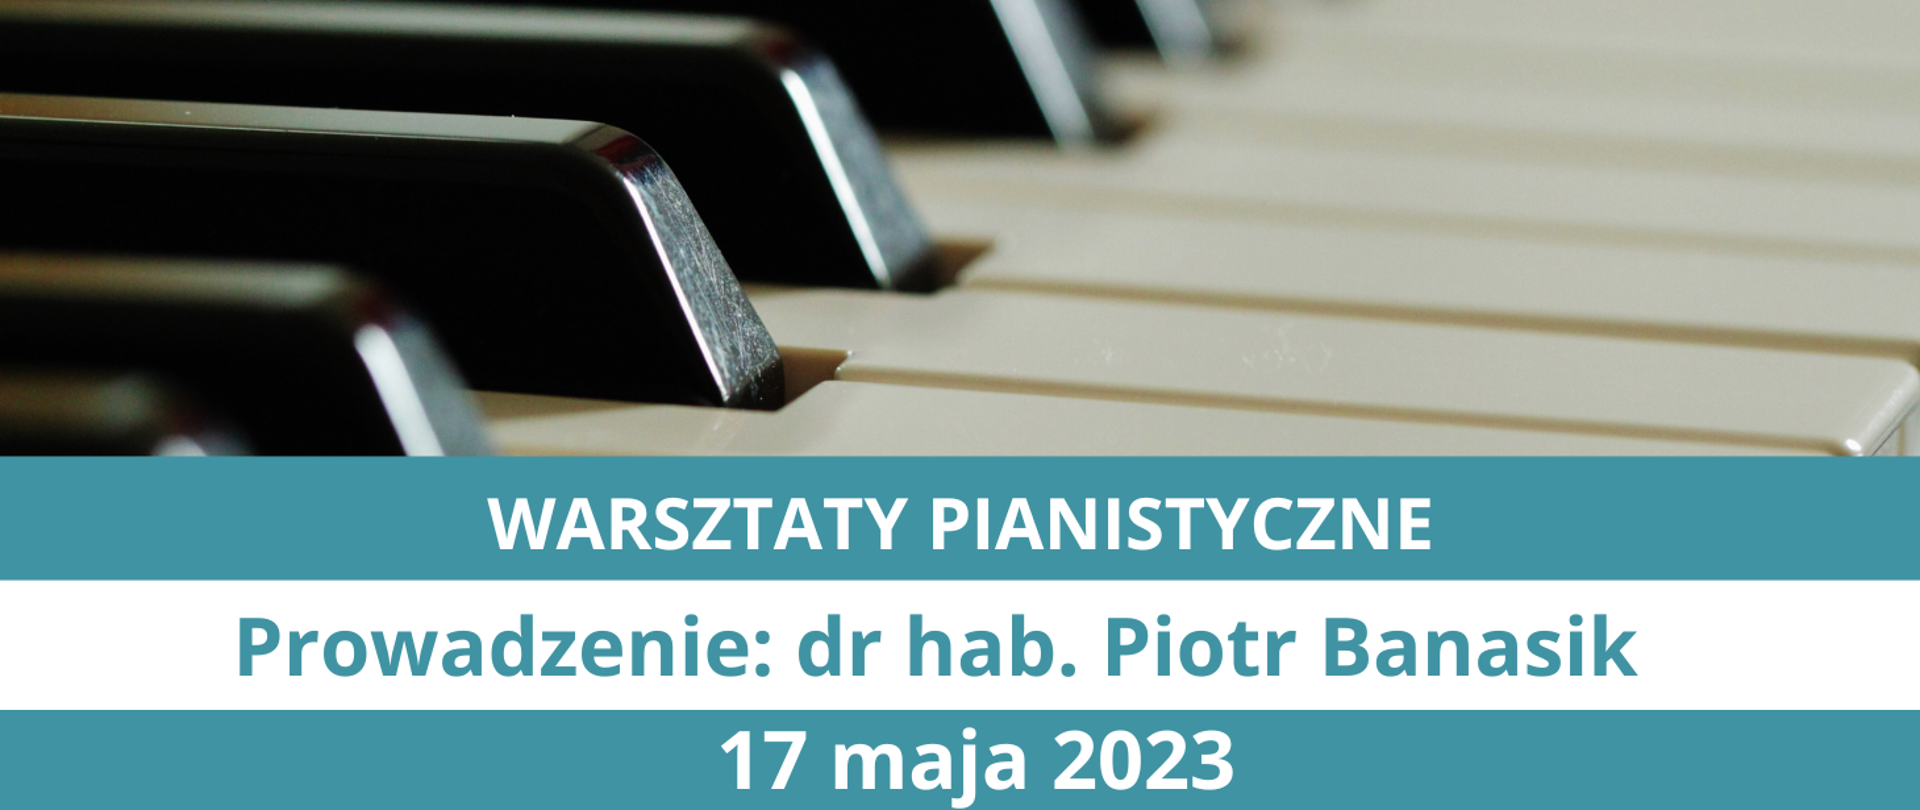 Plakat informaujacy o warsztaty dla pianistów, zaplanowanych na 17 maja 2023, prowadzonych przez pana dr hab. Piotra Banasika. Na górze zdjęcie klawiatury fortepianu (białe i czarne klawisze), na dole tekst w kolorych ramkach.